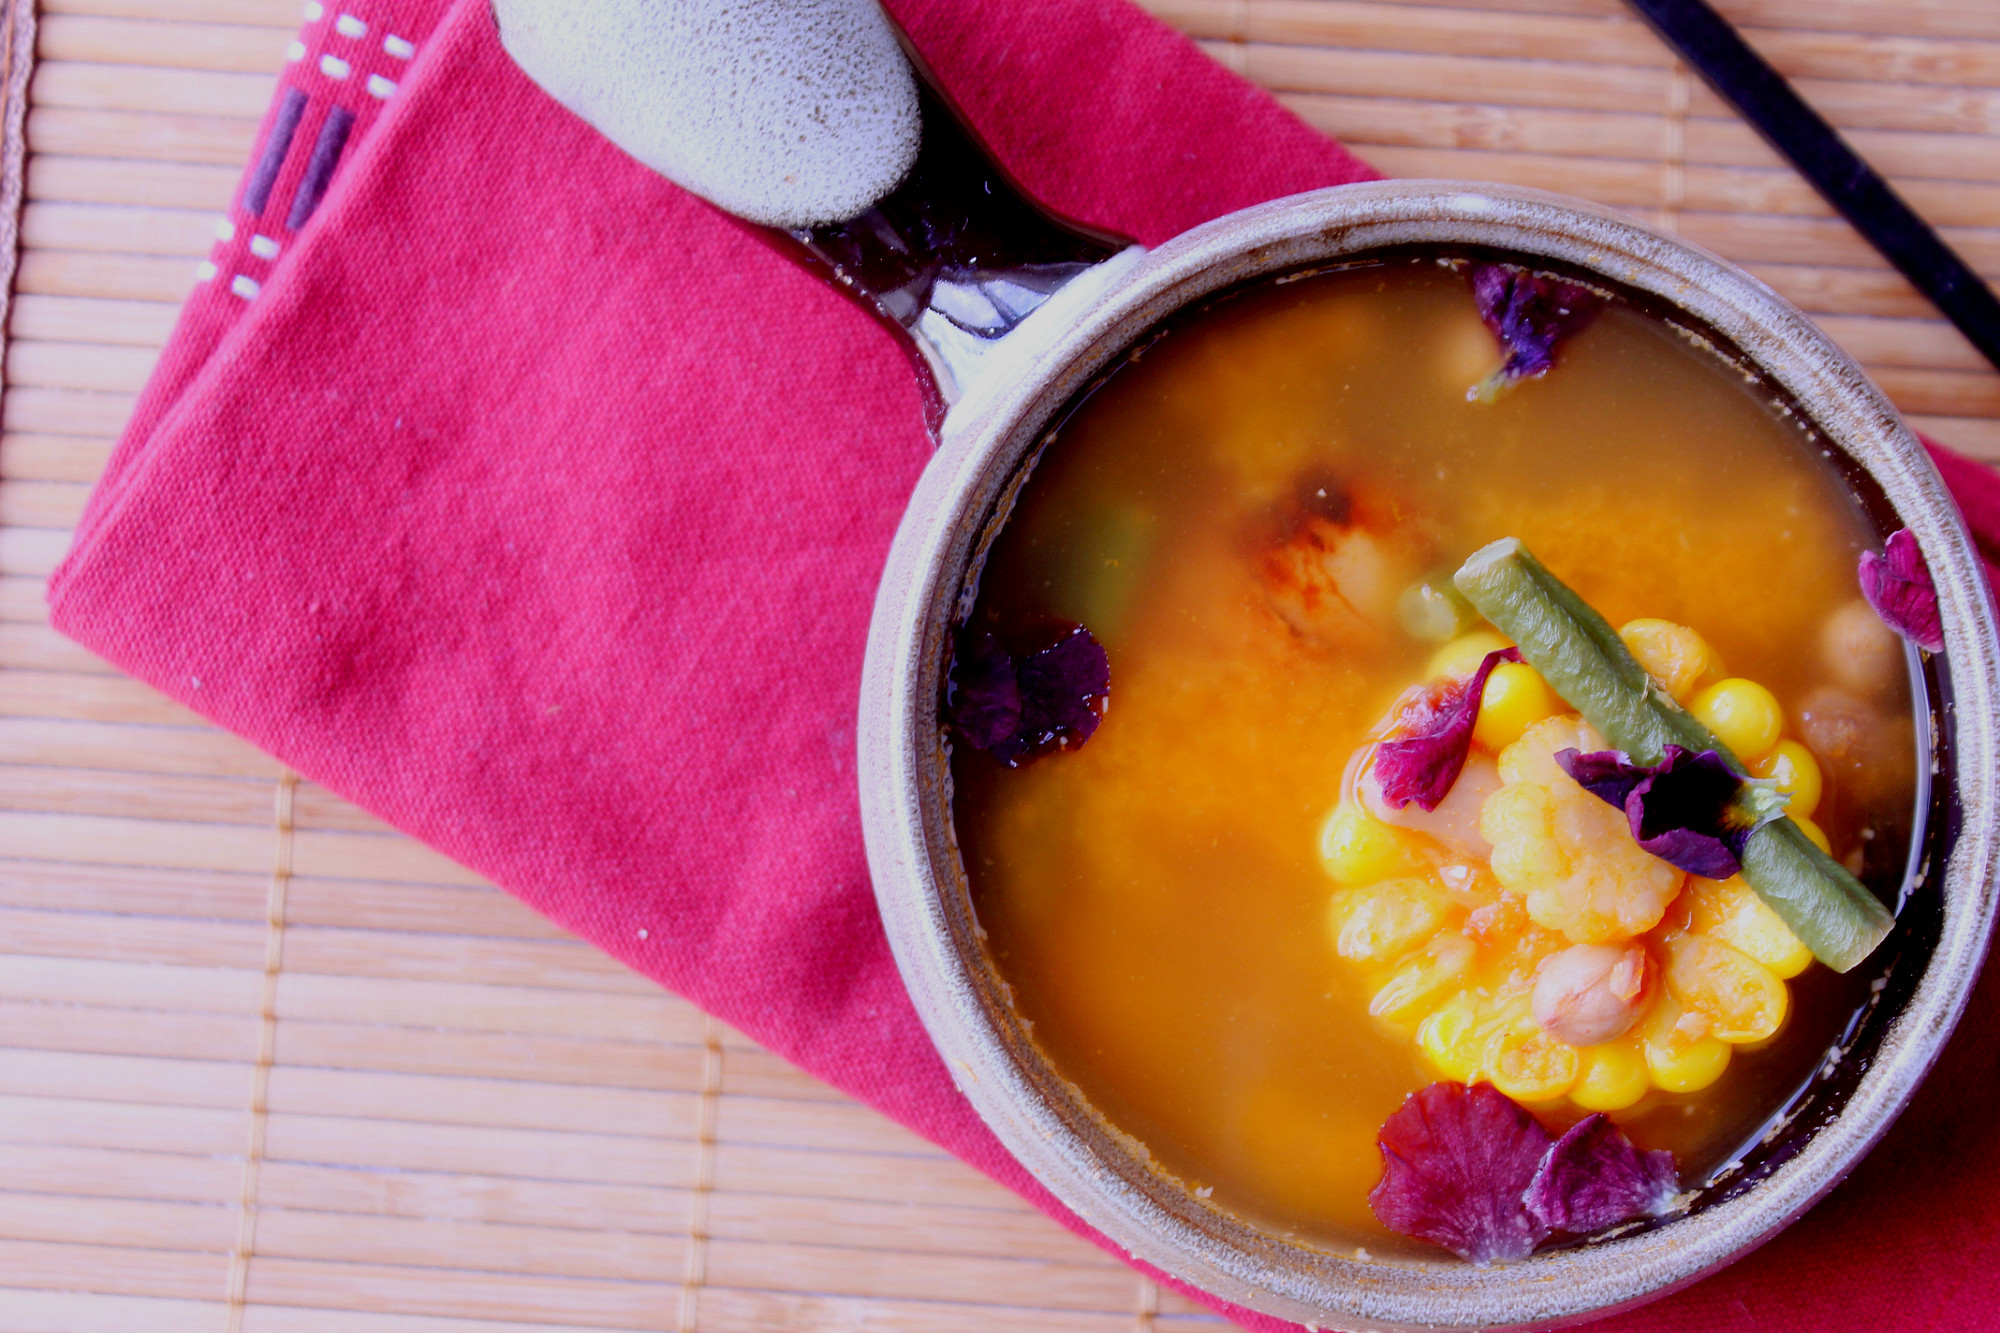 Caroline’s Sayur Asem (Tamarind Soup with Vegetables)